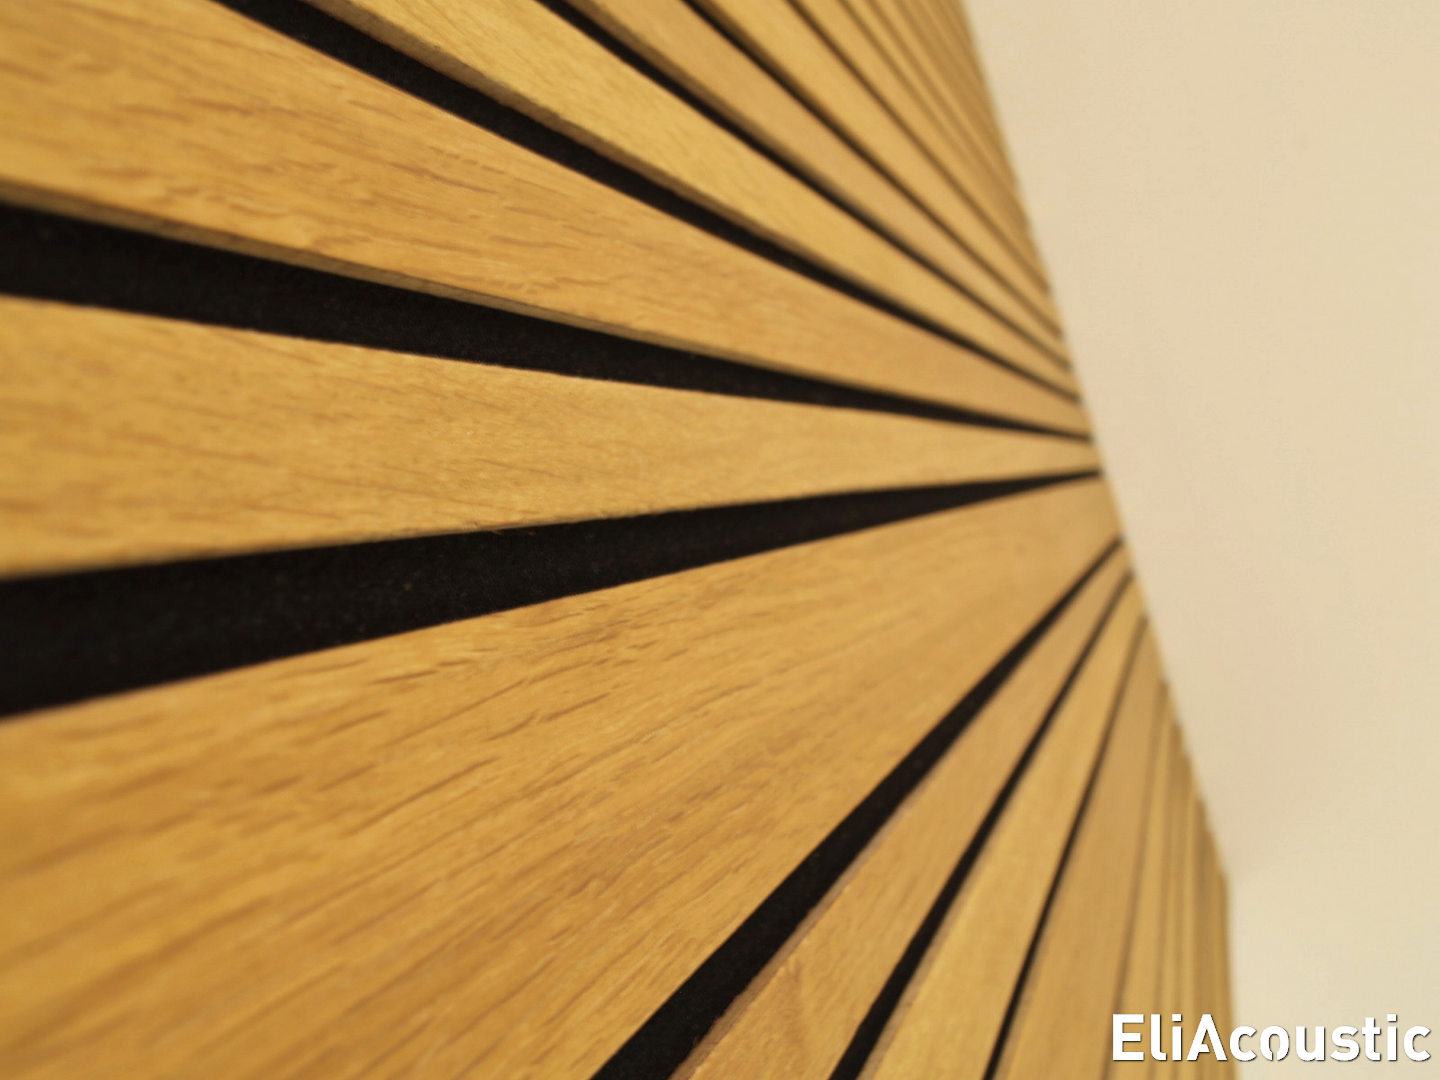 Panel acústico alistonado de madera para sala de espera en una clínica -  EliAcoustic